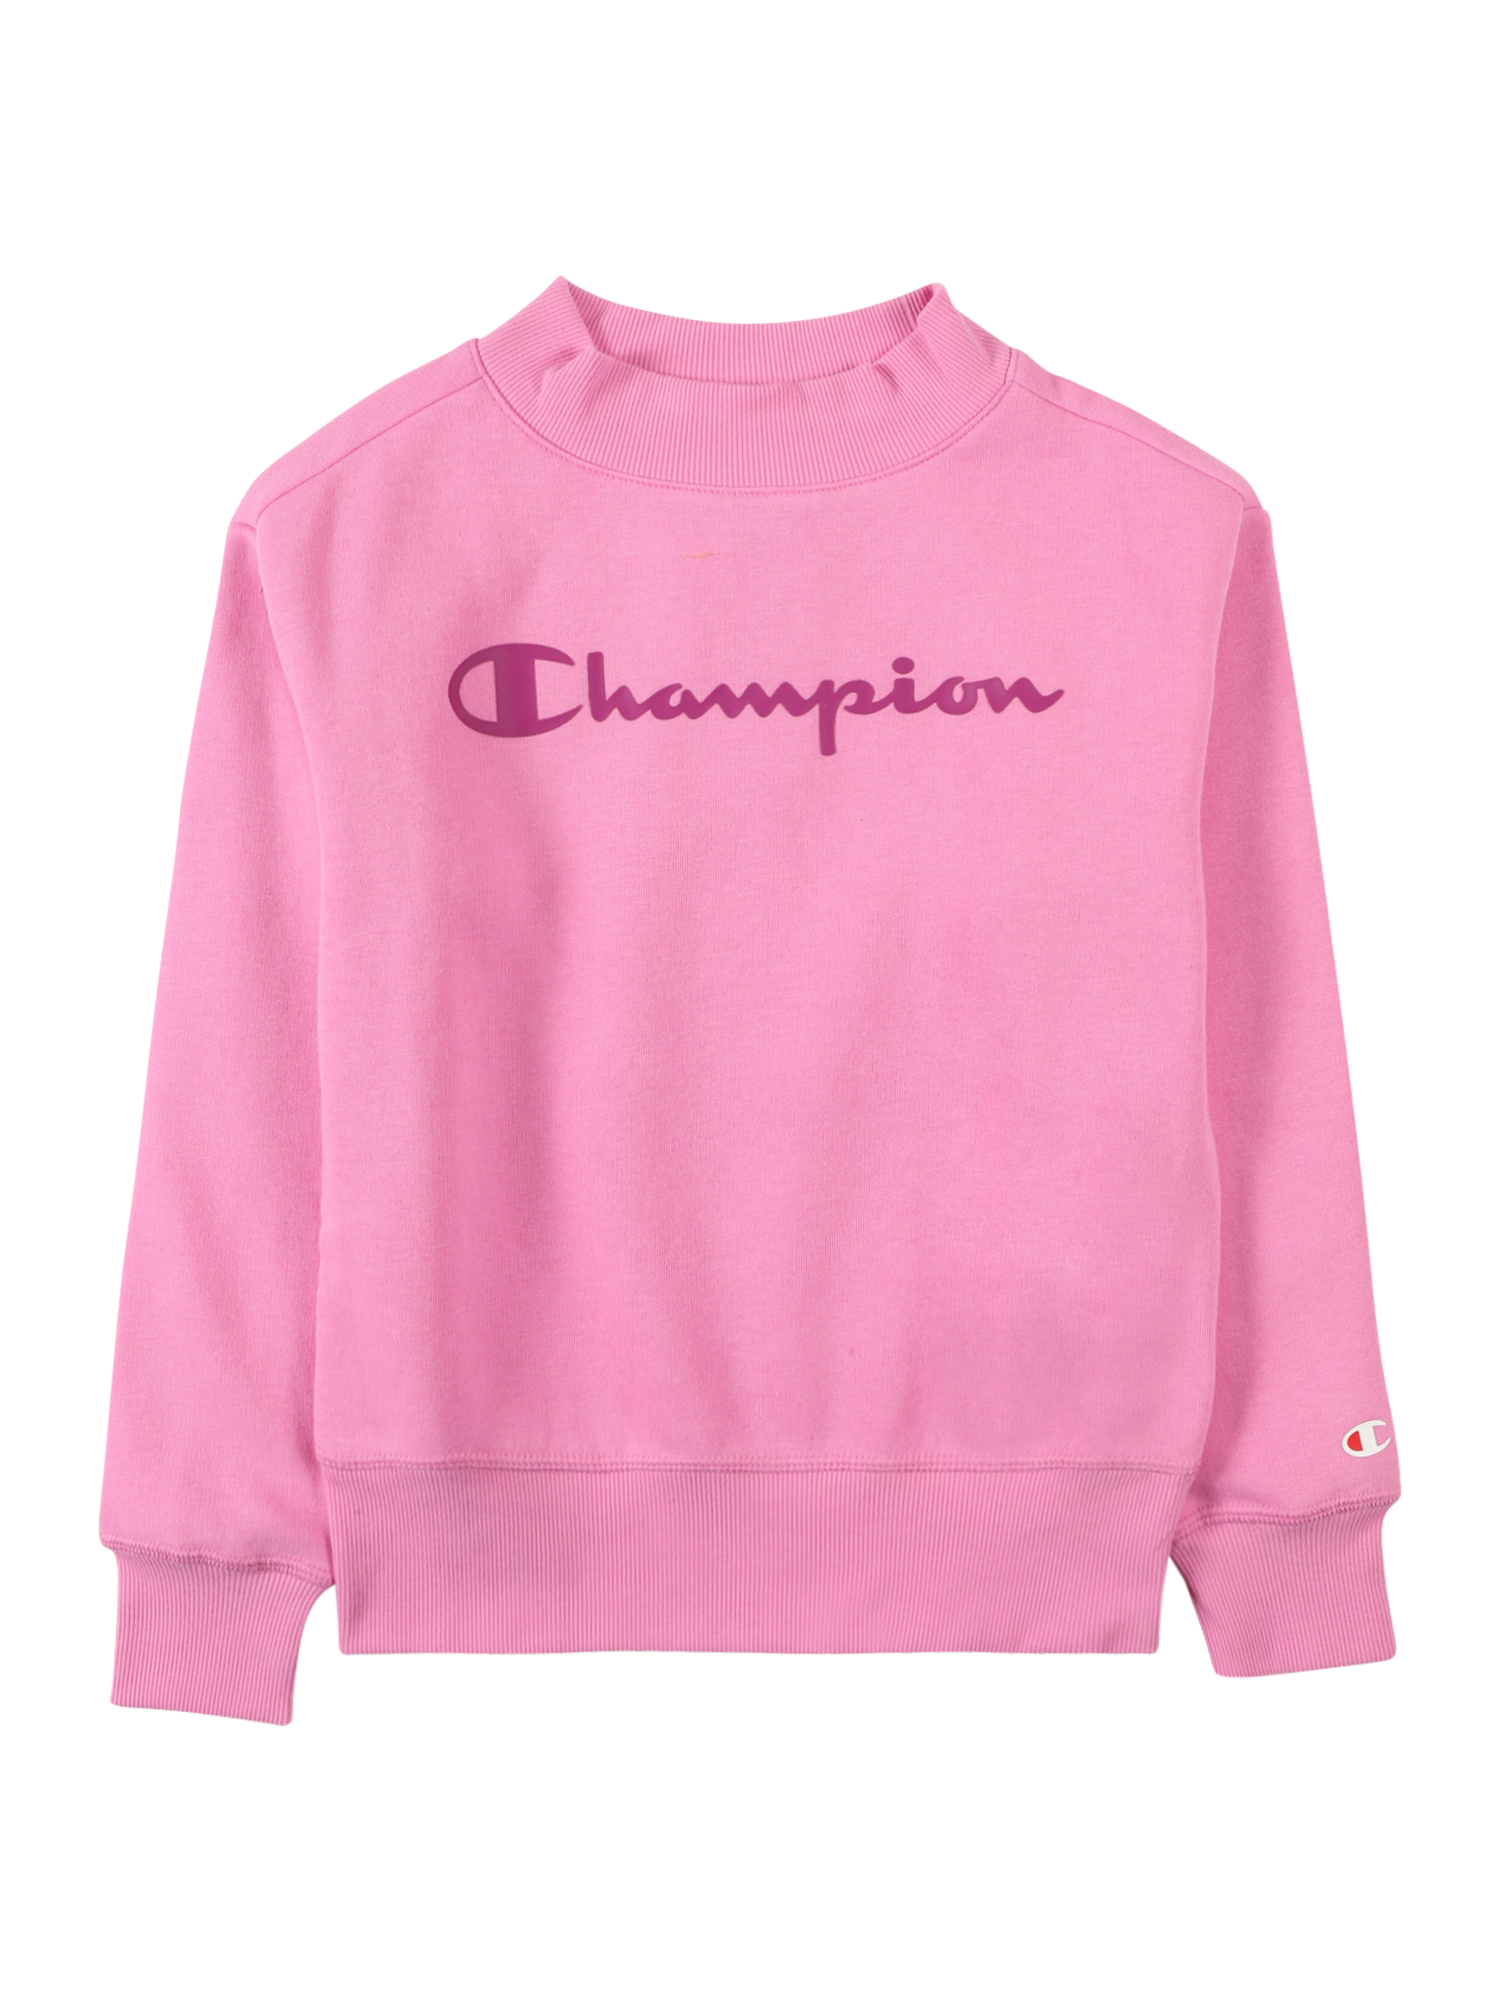 Dziewczynki Dzieci Champion Authentic Athletic Apparel Bluzka sportowa w kolorze Różowy, Ciemnoróżowym 